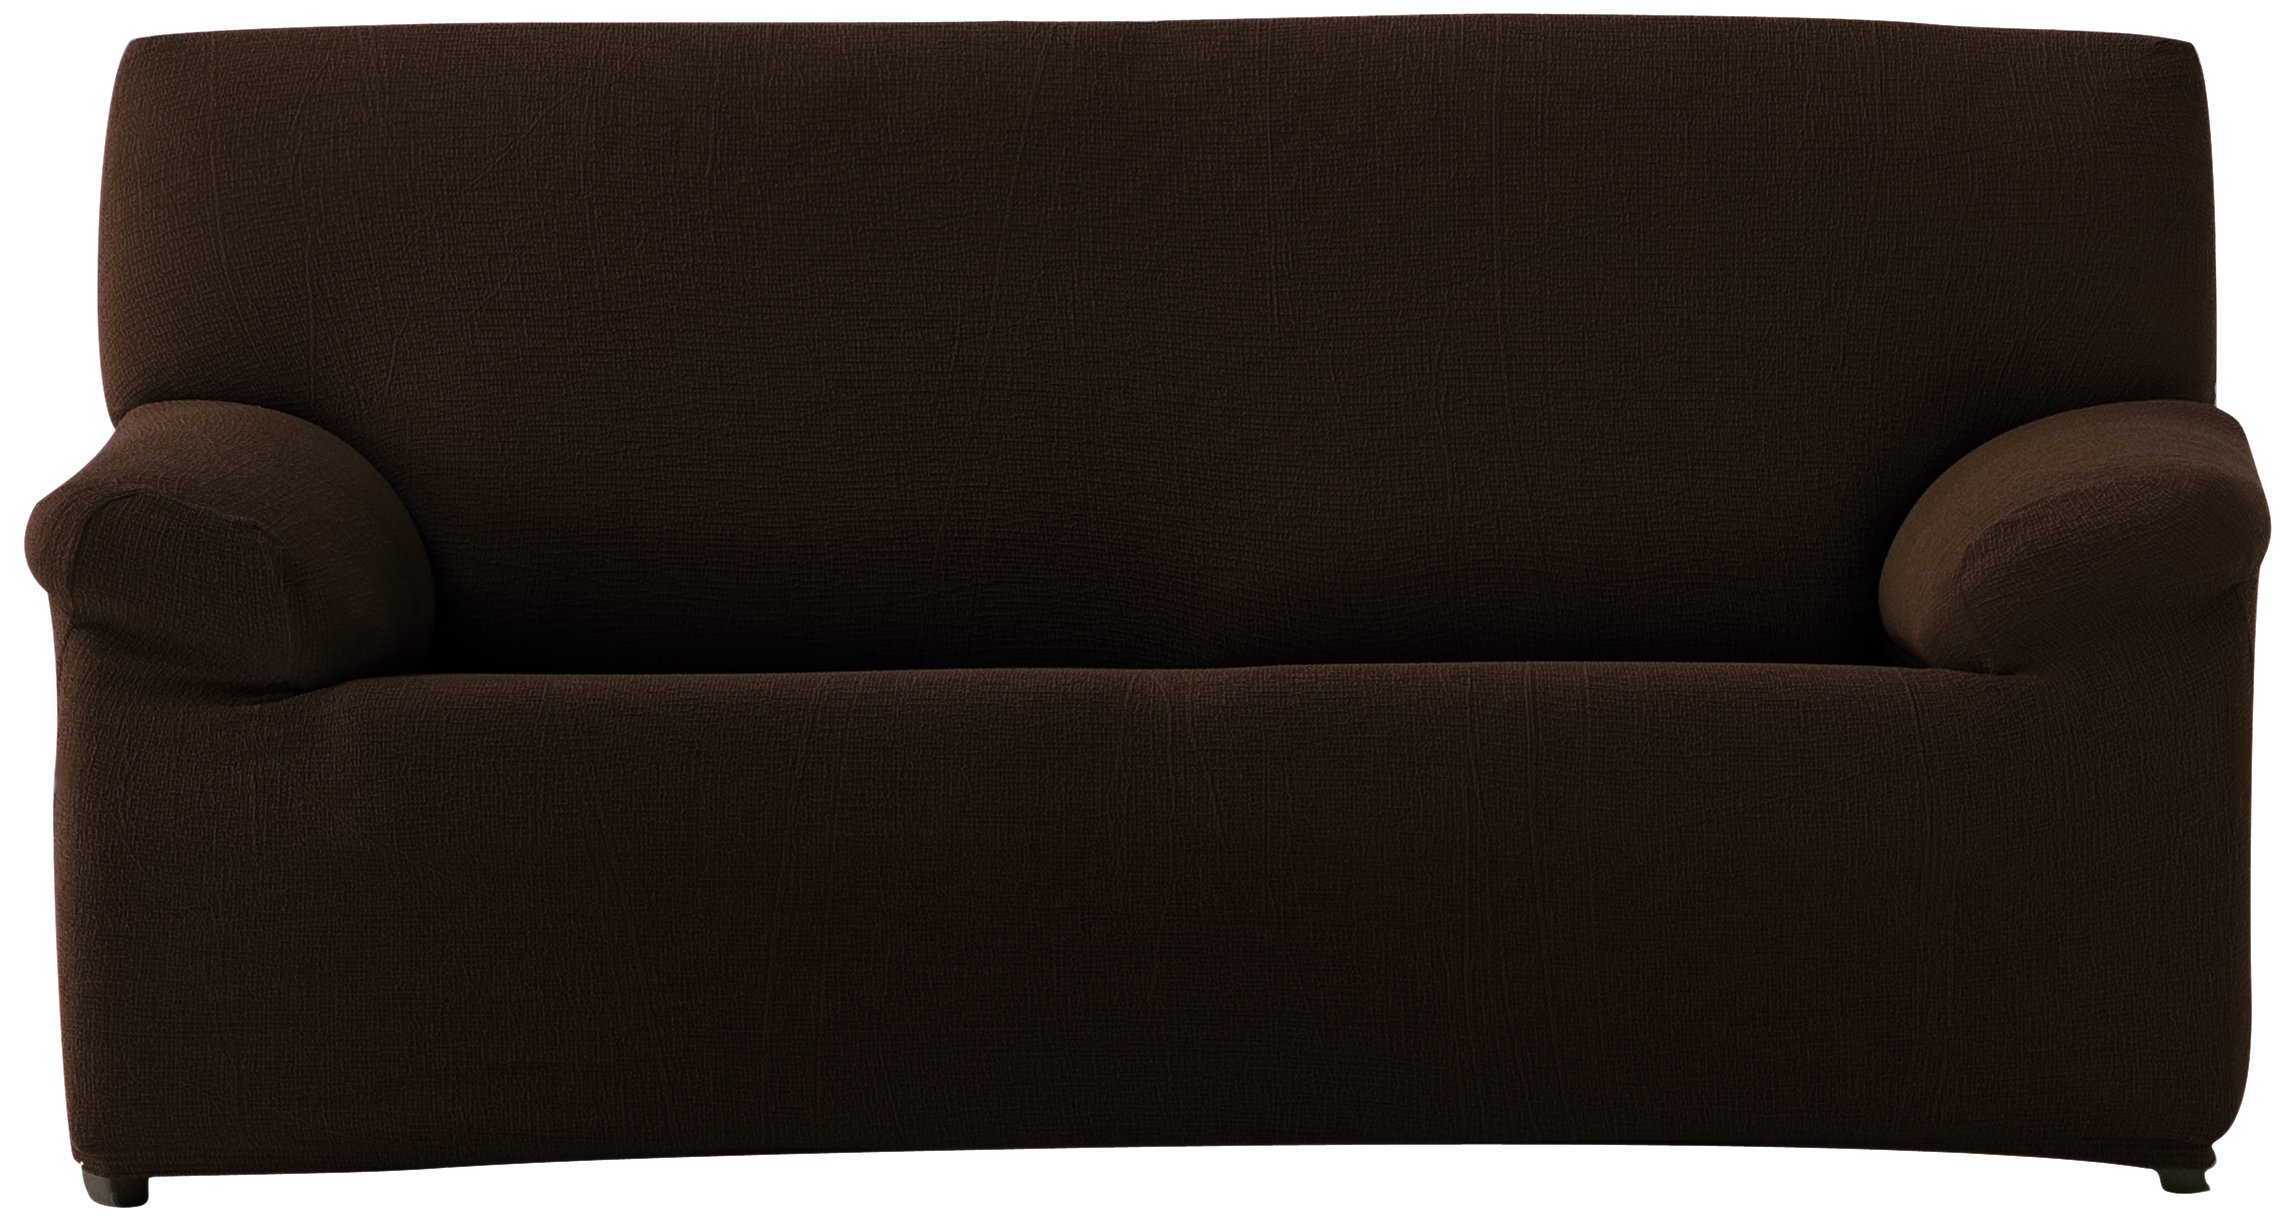 Eysa Teide elastisch Sofa überwurf 3 sitzer, Polyester-Baumwolle, Braun, 37 x 29 x 17 cm